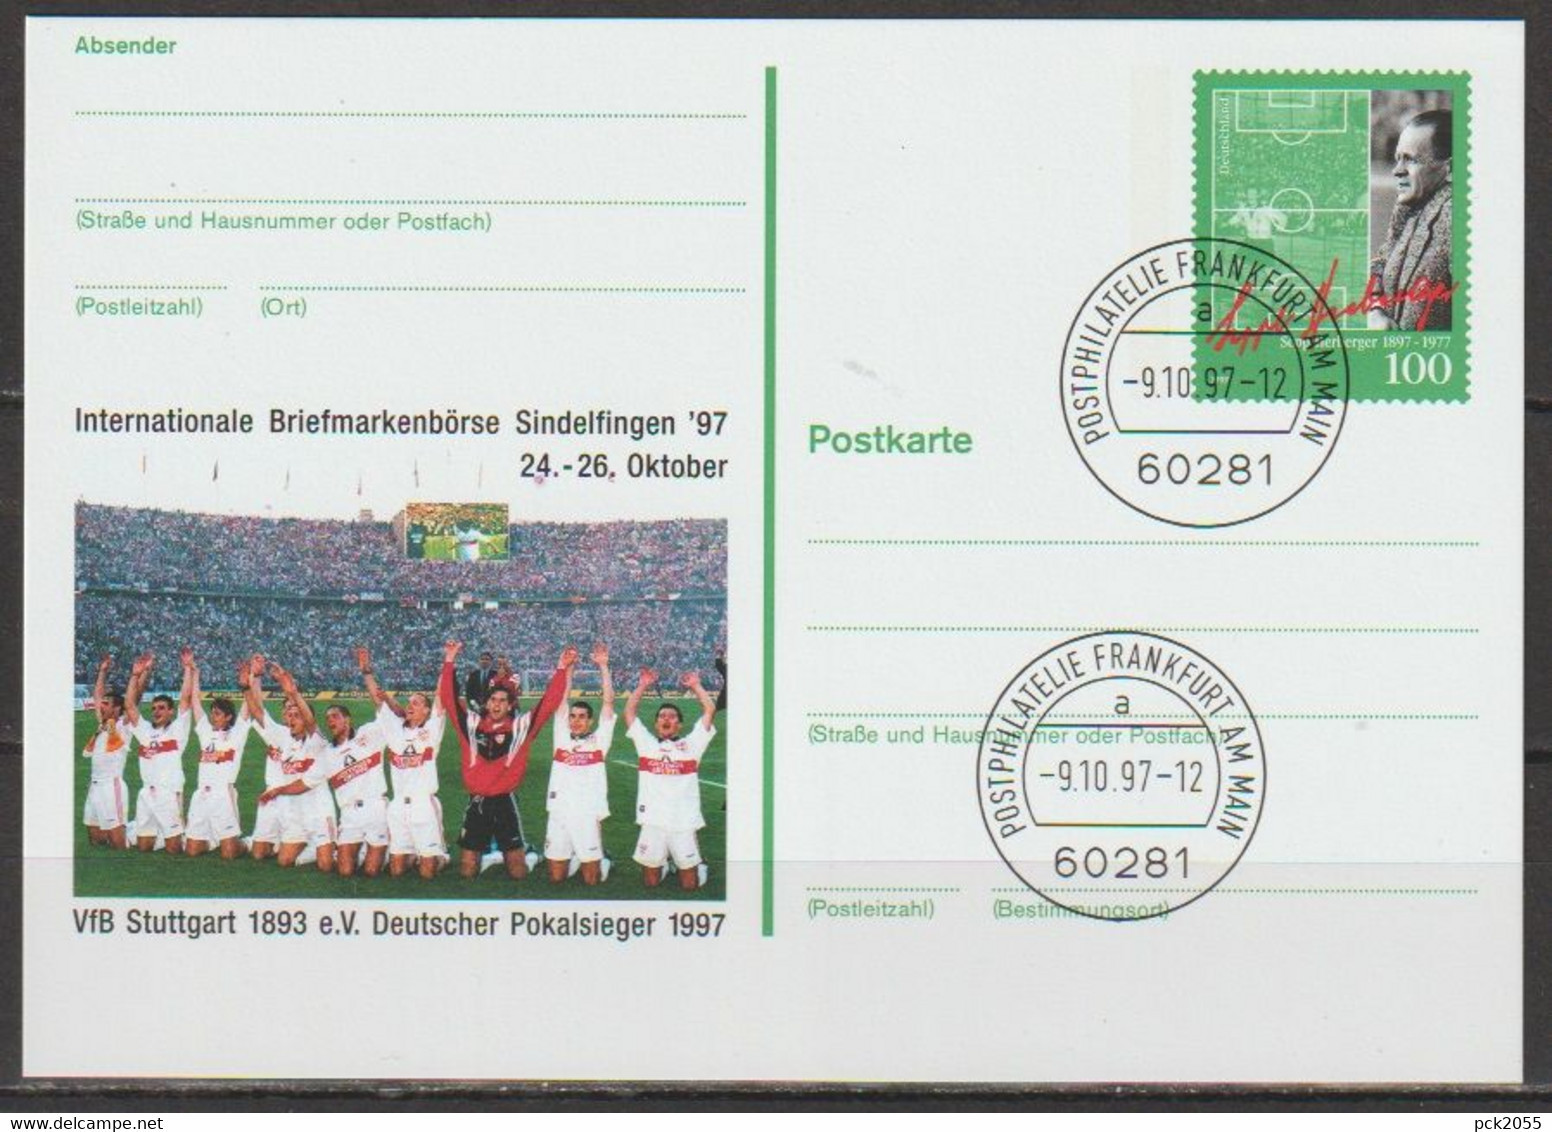 BRD Ganzsache 1997 PSo50 Briefmarkenbörse Sindelfingen EST. 9.10.97 Postphilatelie Frankfurt(d186)günstige Versandkosten - Cartes Postales - Oblitérées